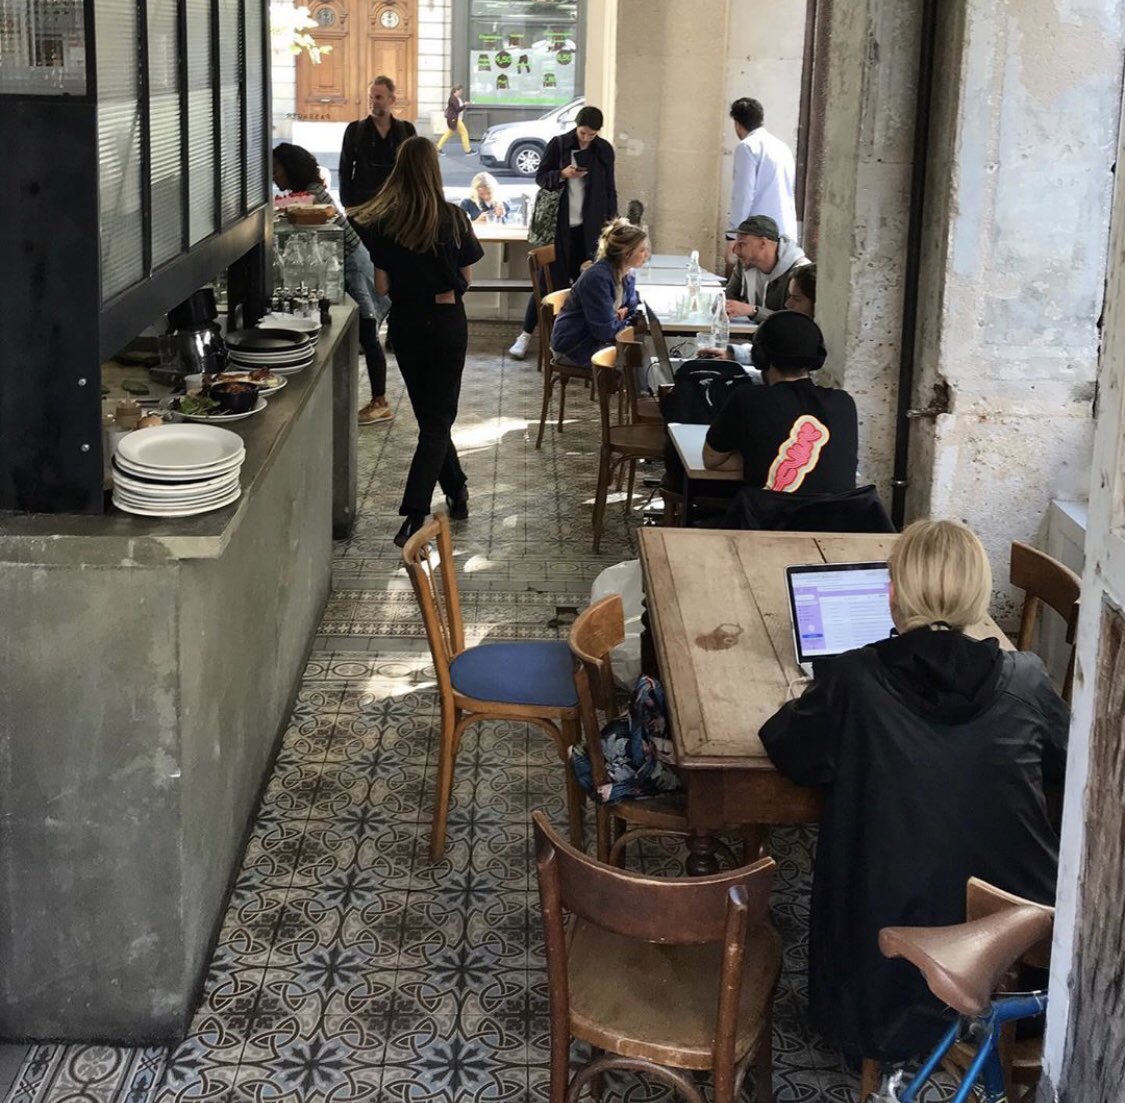 Café Passager (107 Avenue Ledru Rollin,Paris) cool pour un brunch, goûter etc 